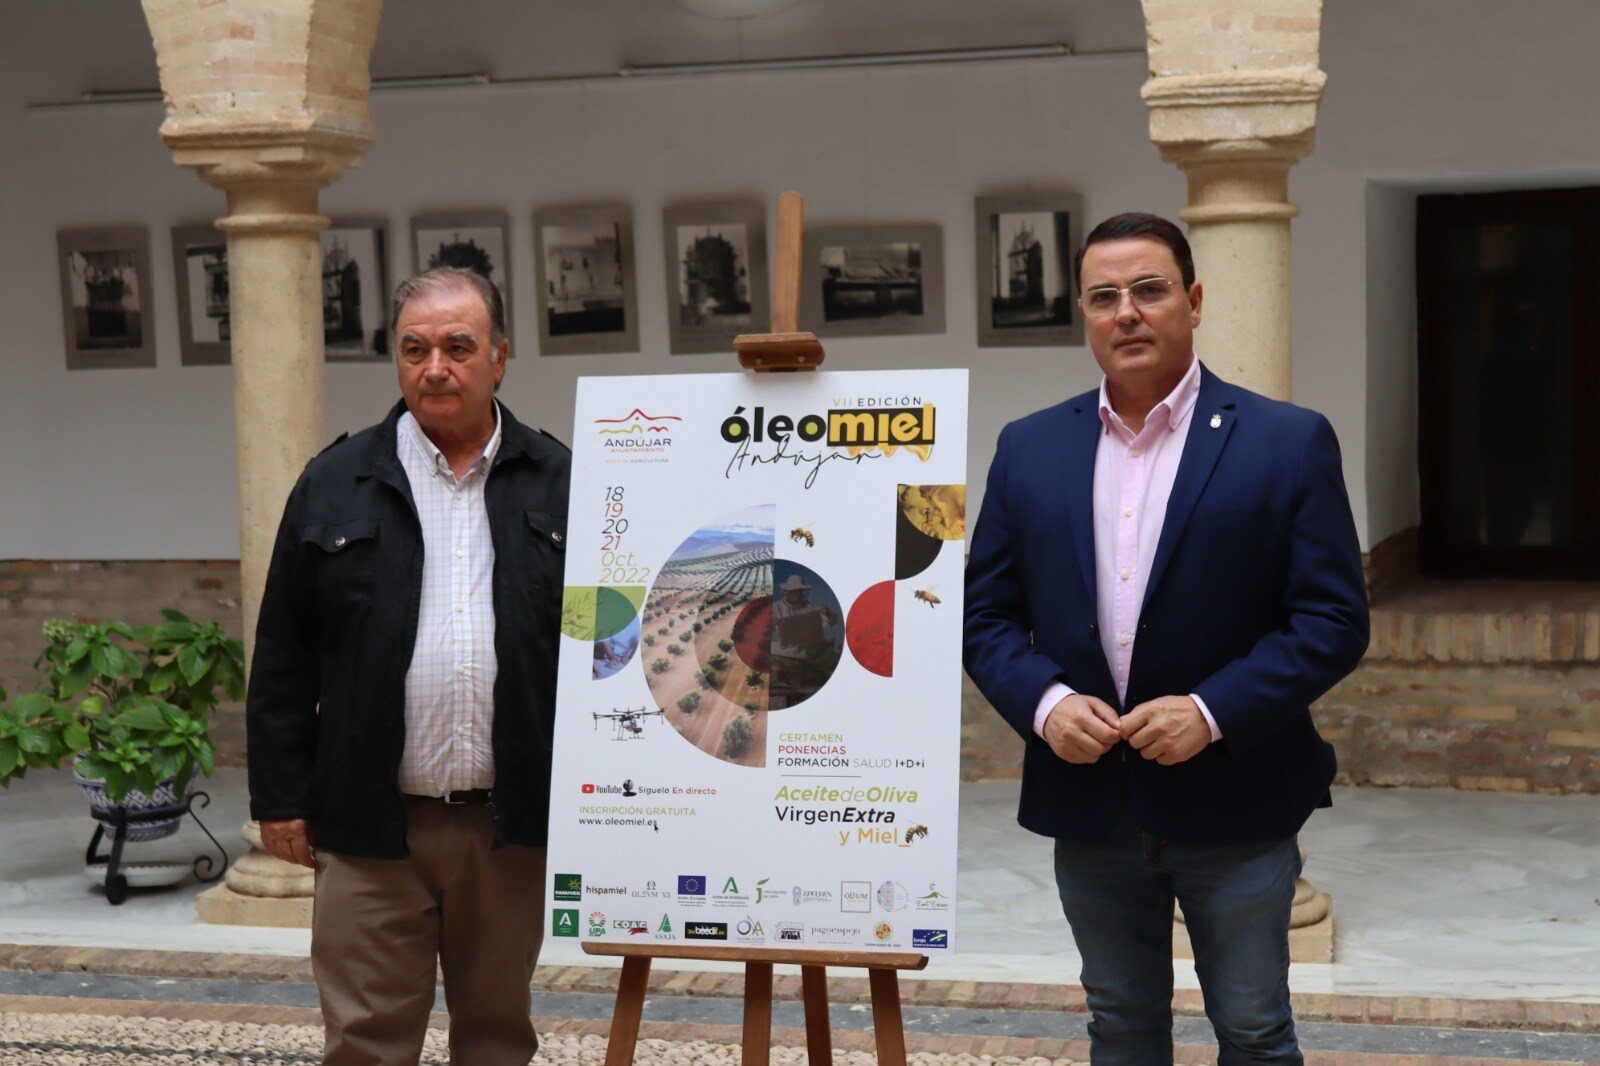 El Ayuntamiento de Andújar presenta la VII edición de Óleomiel